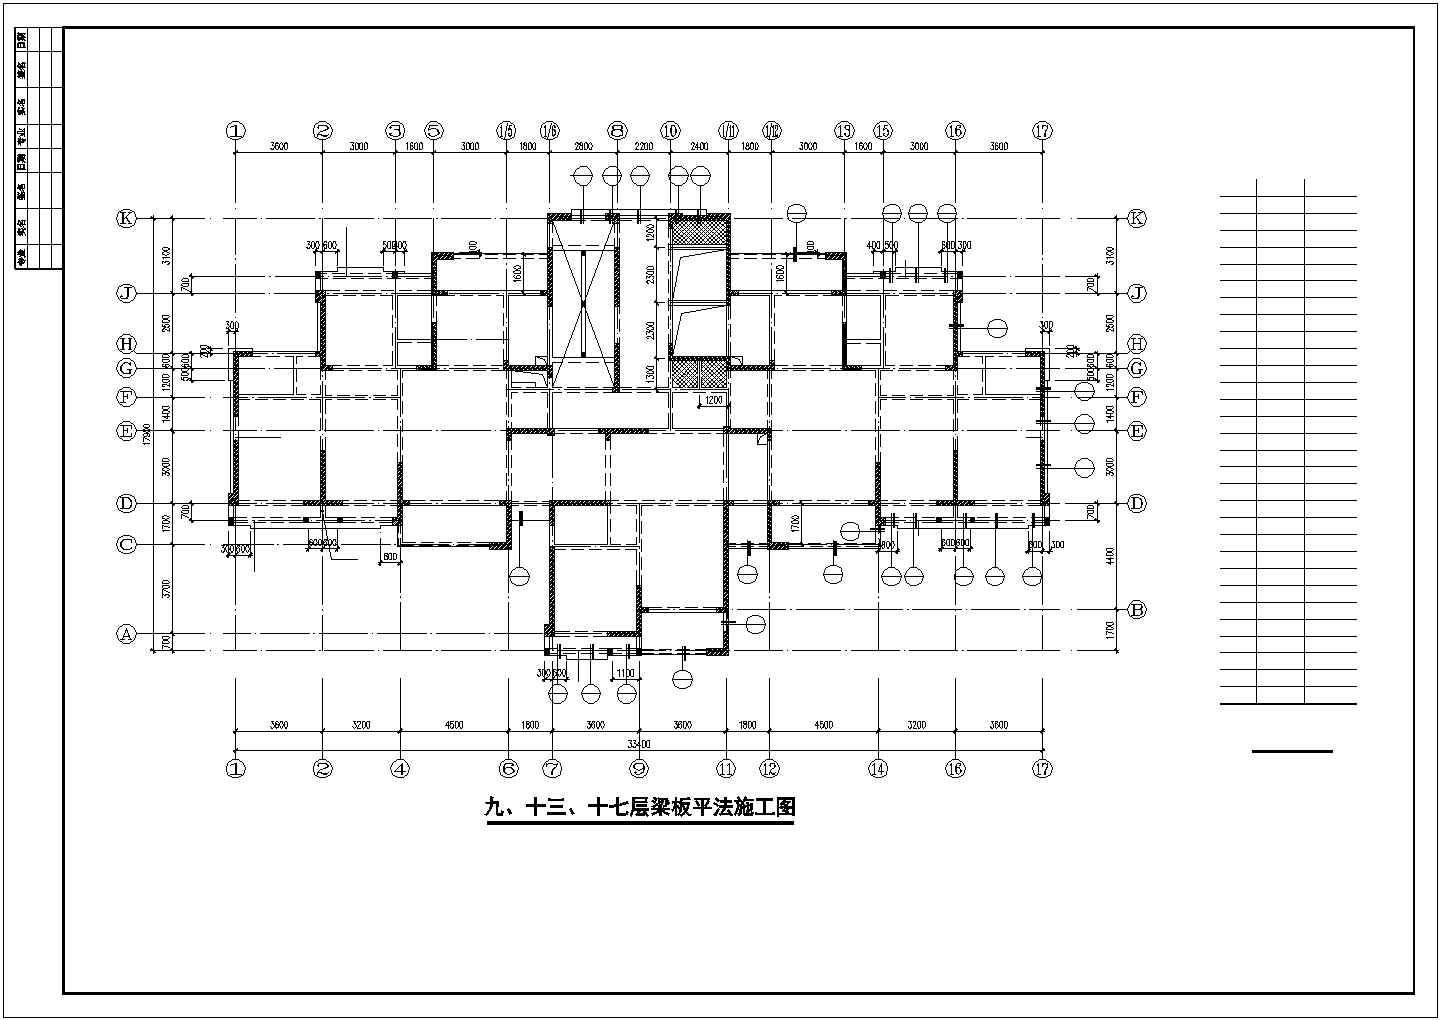 剪力墙住宅结构设计图（26层桩基础）